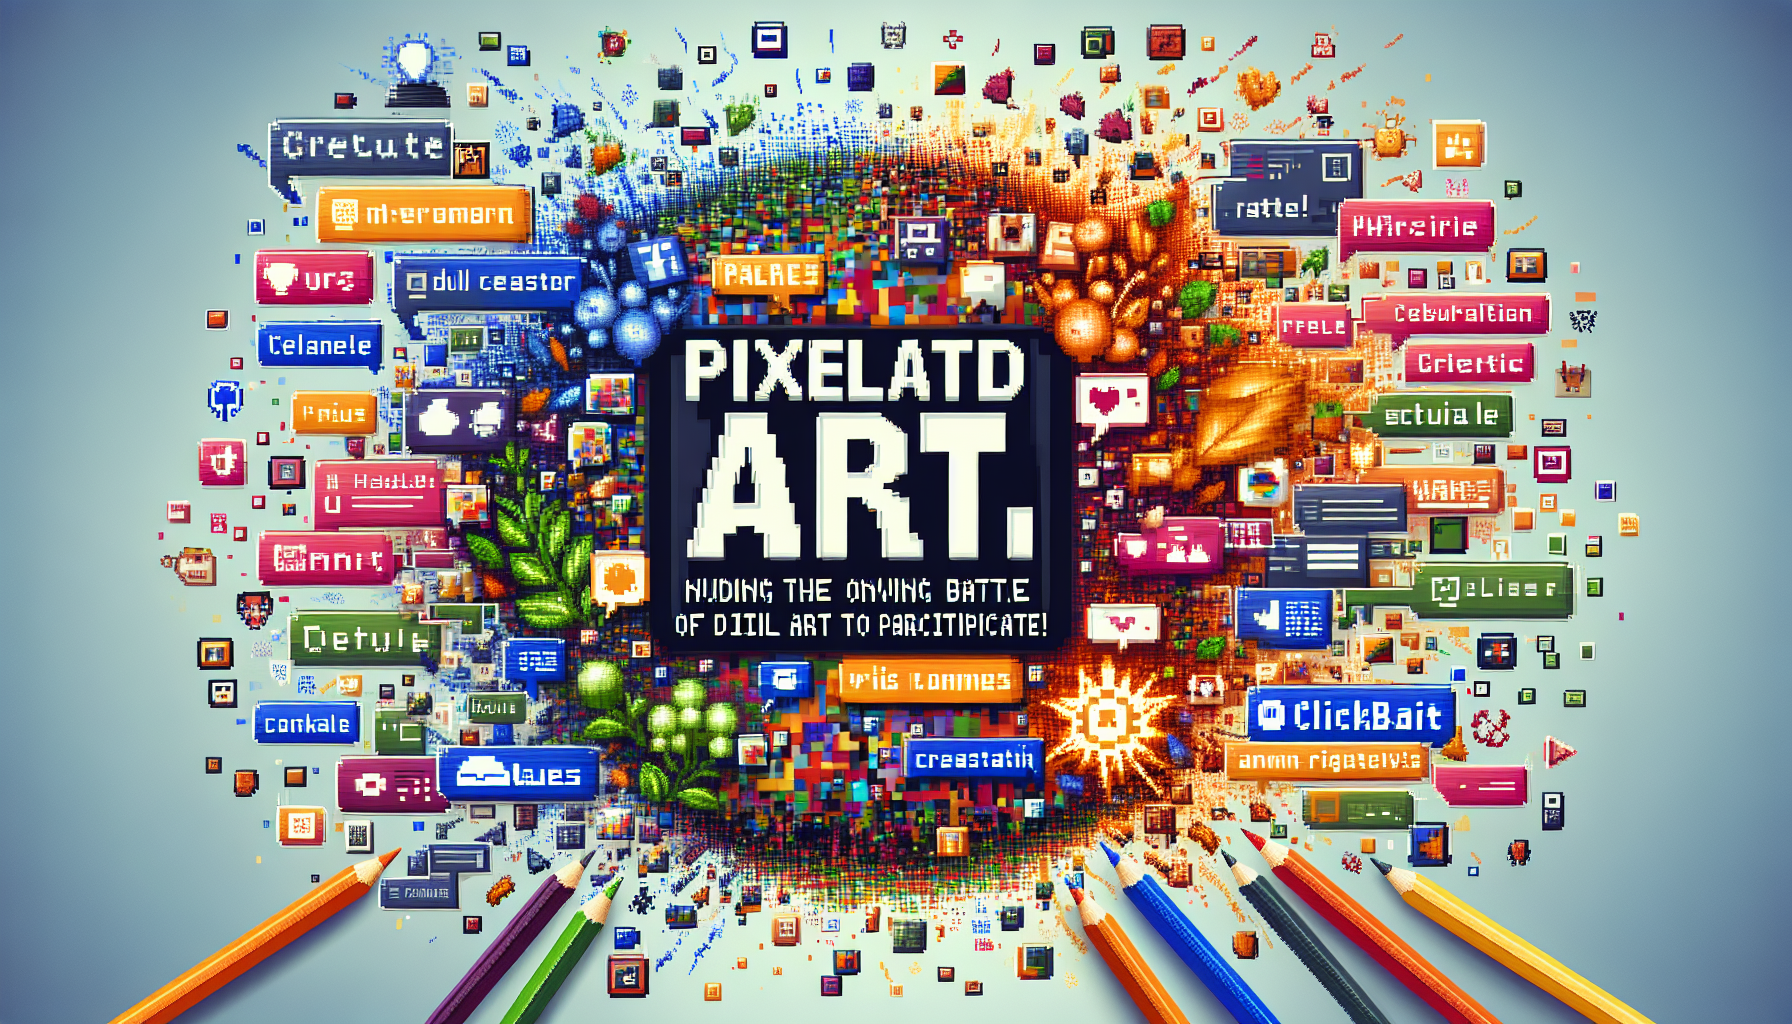 découvrez comment participer à la pixel war sur reddit et contribuez à cet événement communautaire unique avec votre créativité et votre passion pour l'art numérique !